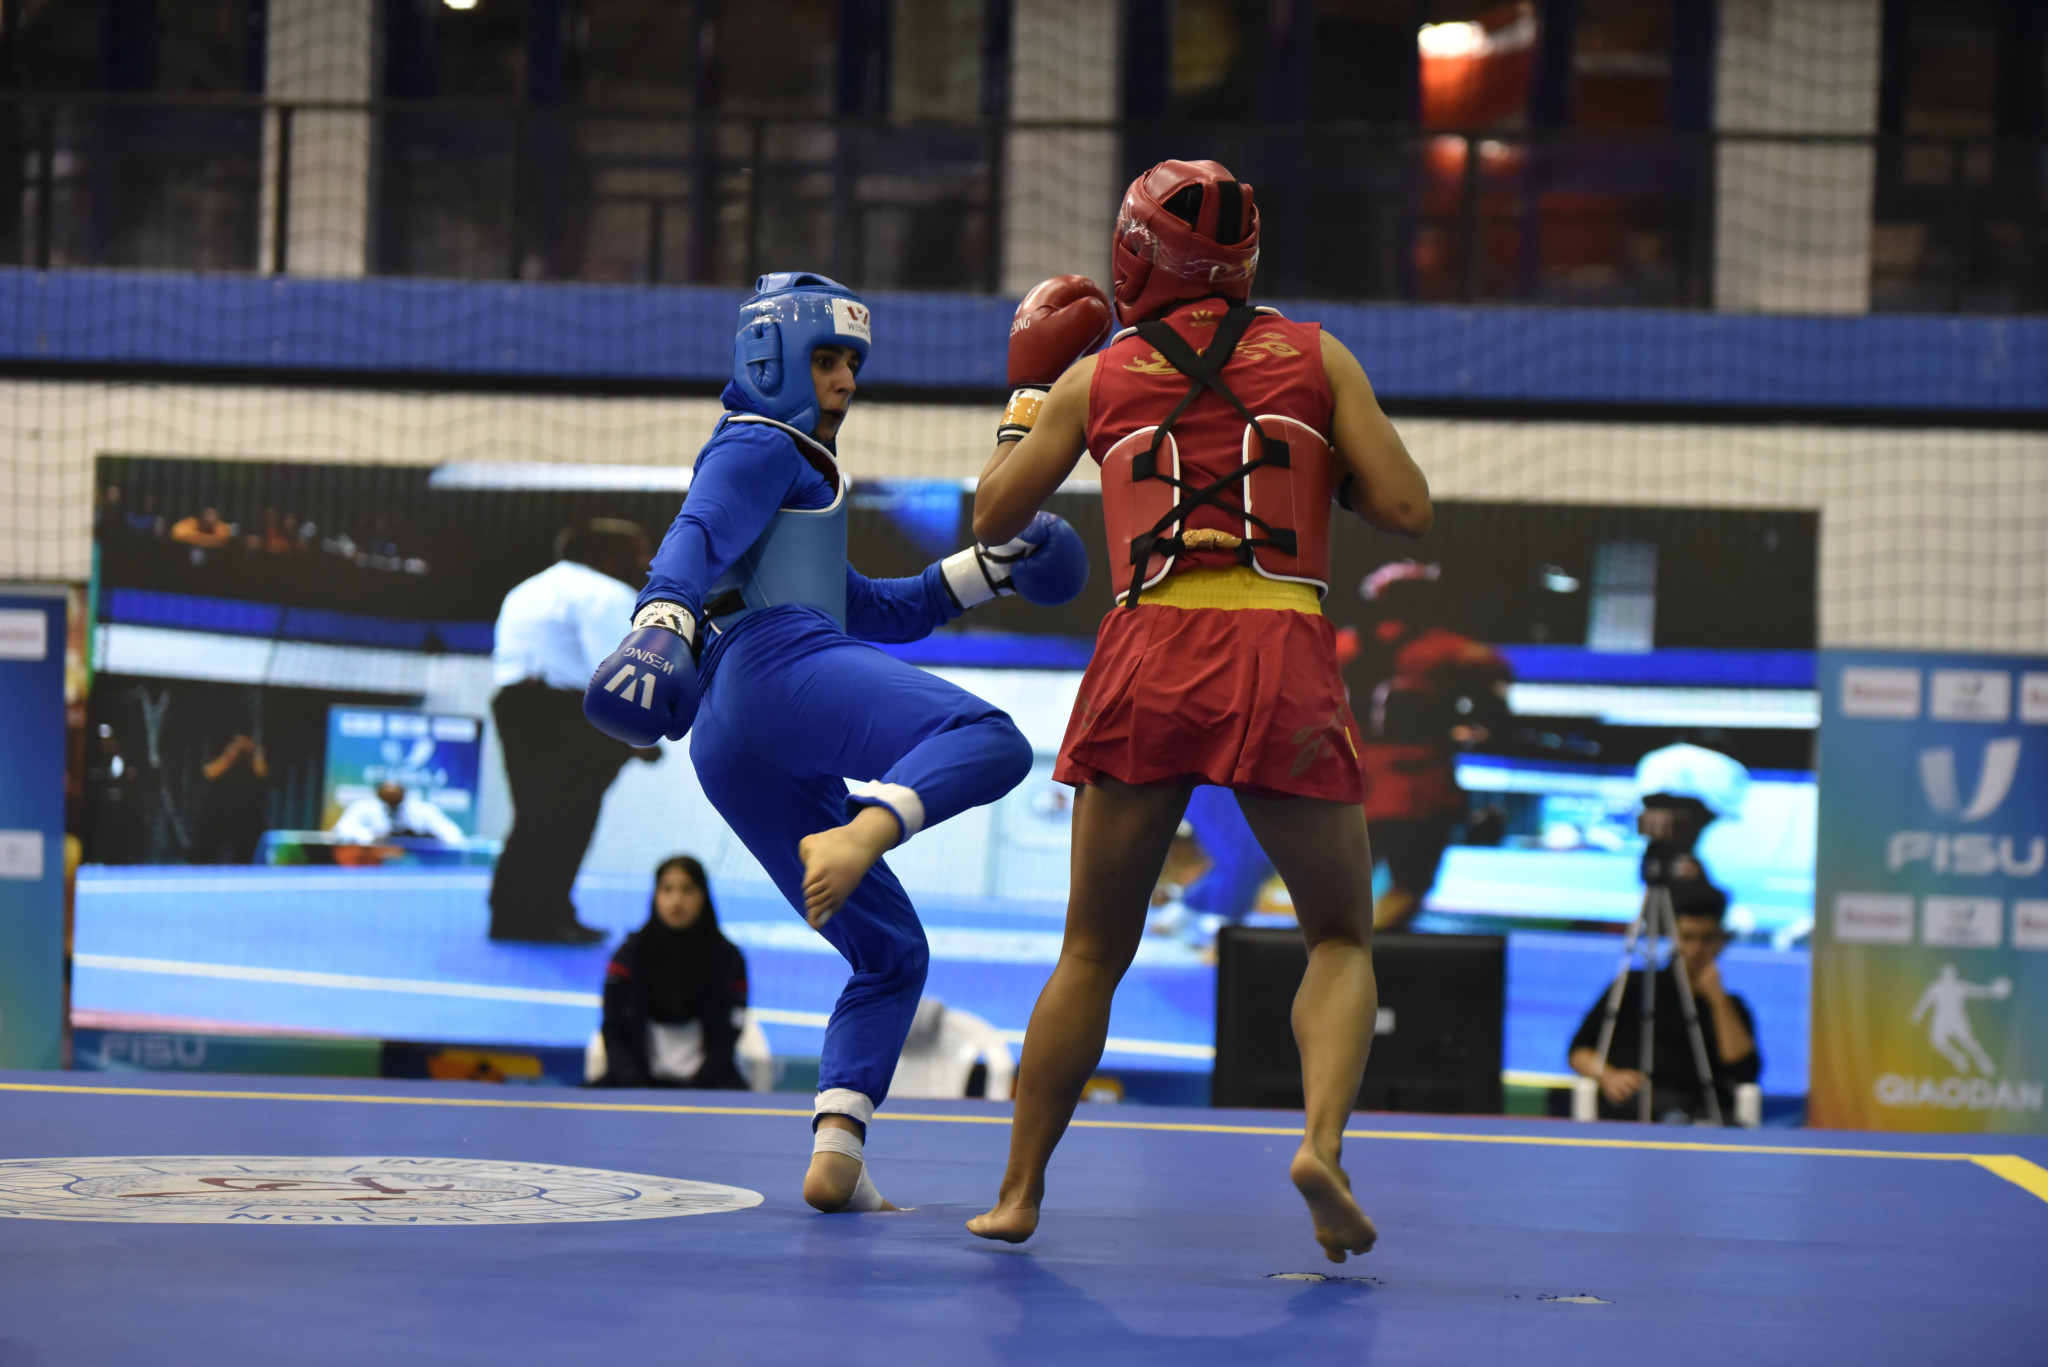 Wushu sanda saw bouts for men and women ©FISU